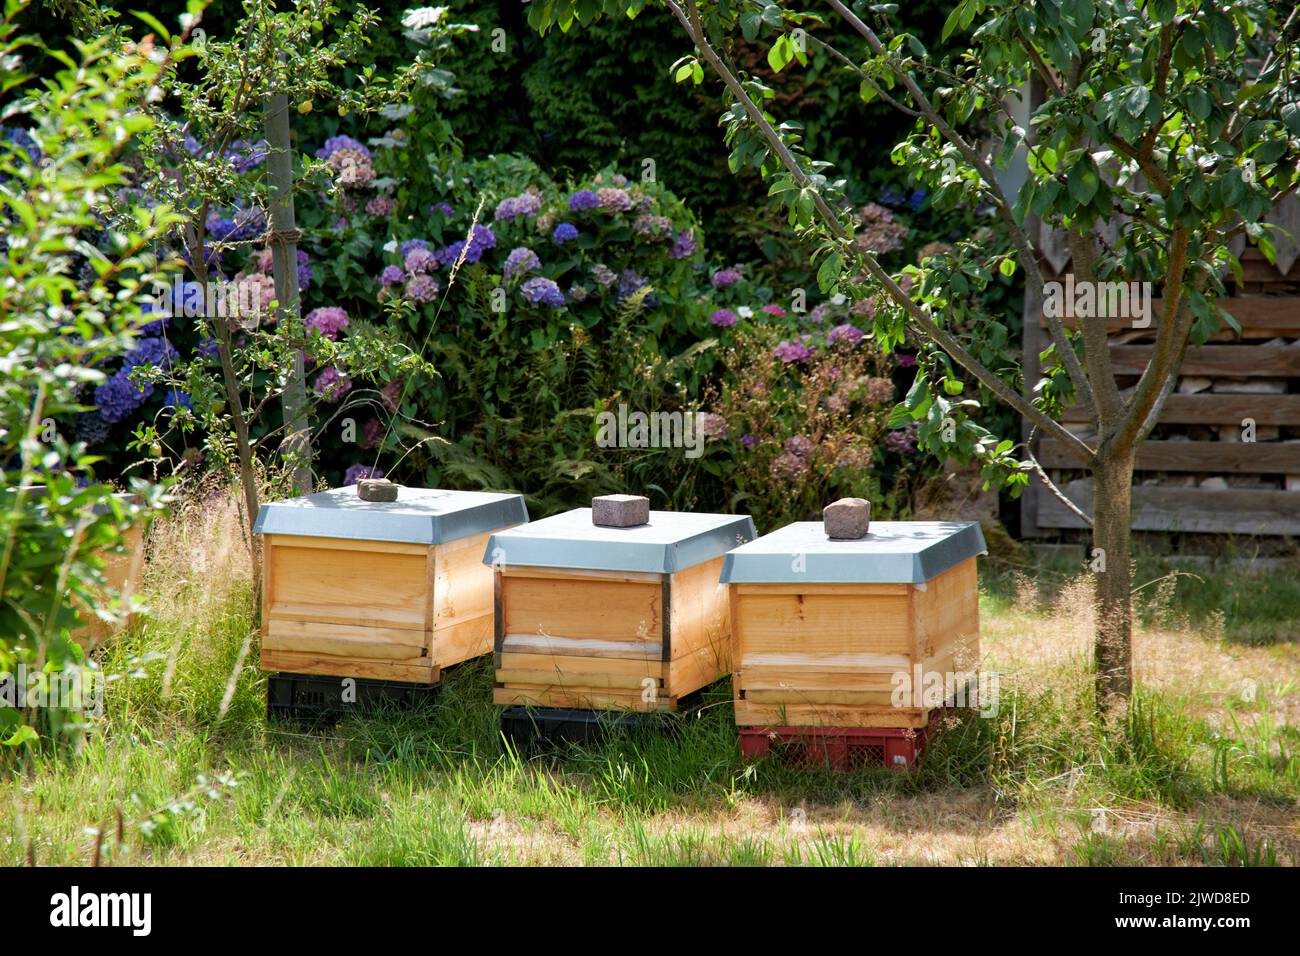 Bienenstoecke stehen auf einem Gartengelaende in einem Wohngebiet im hohen Gras. Foto de stock